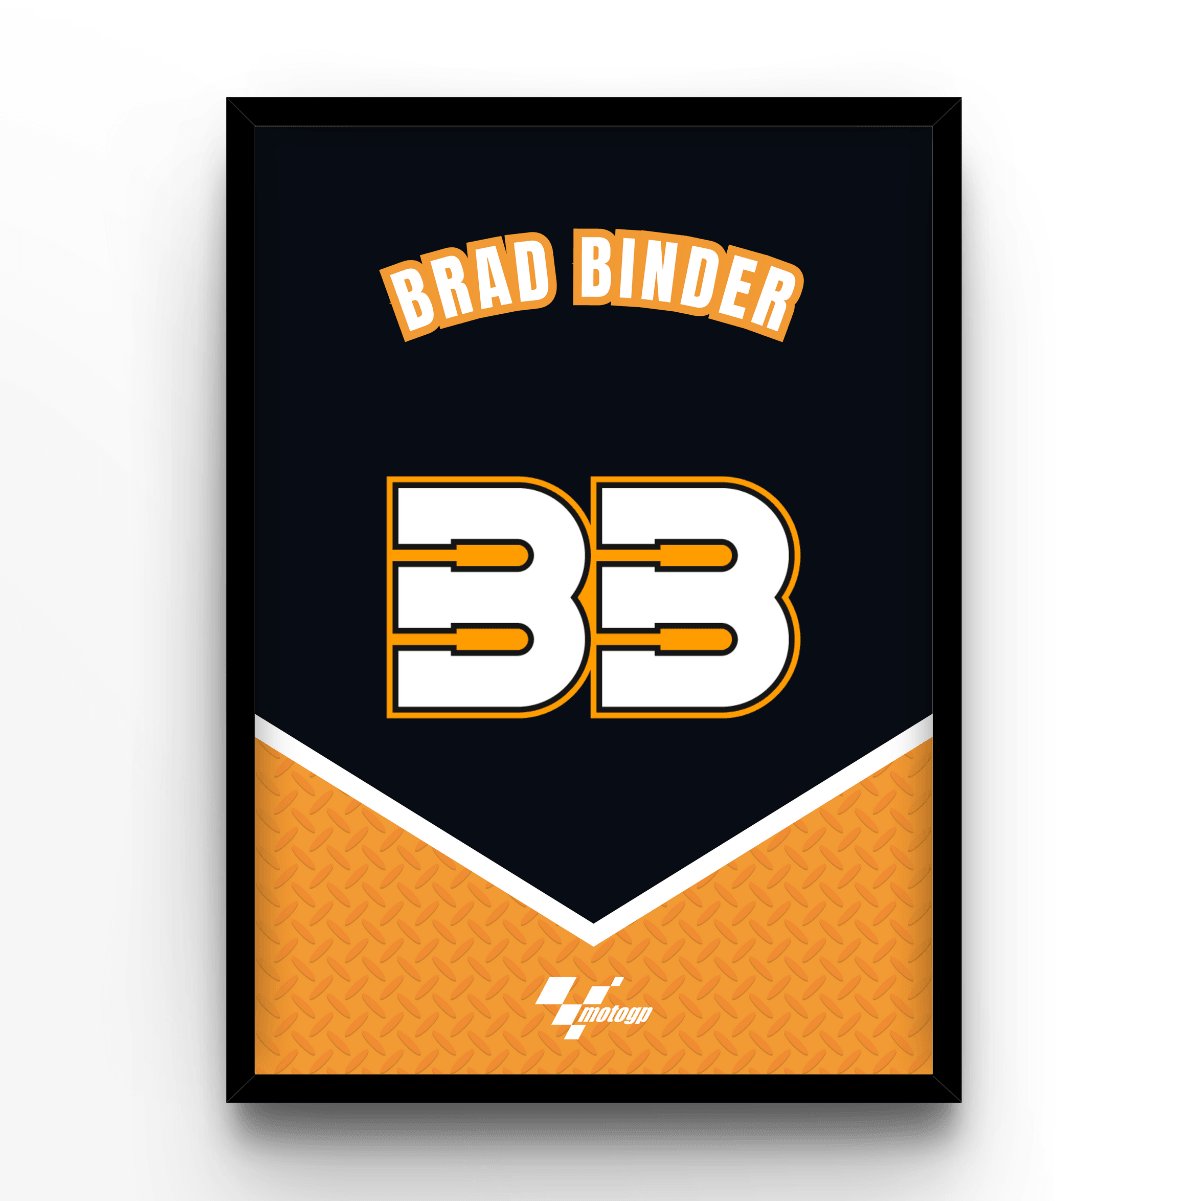 Brad Binder - A4, A3, A2 Posters Base - Poster Print Shop / Art Prints / PostersBase